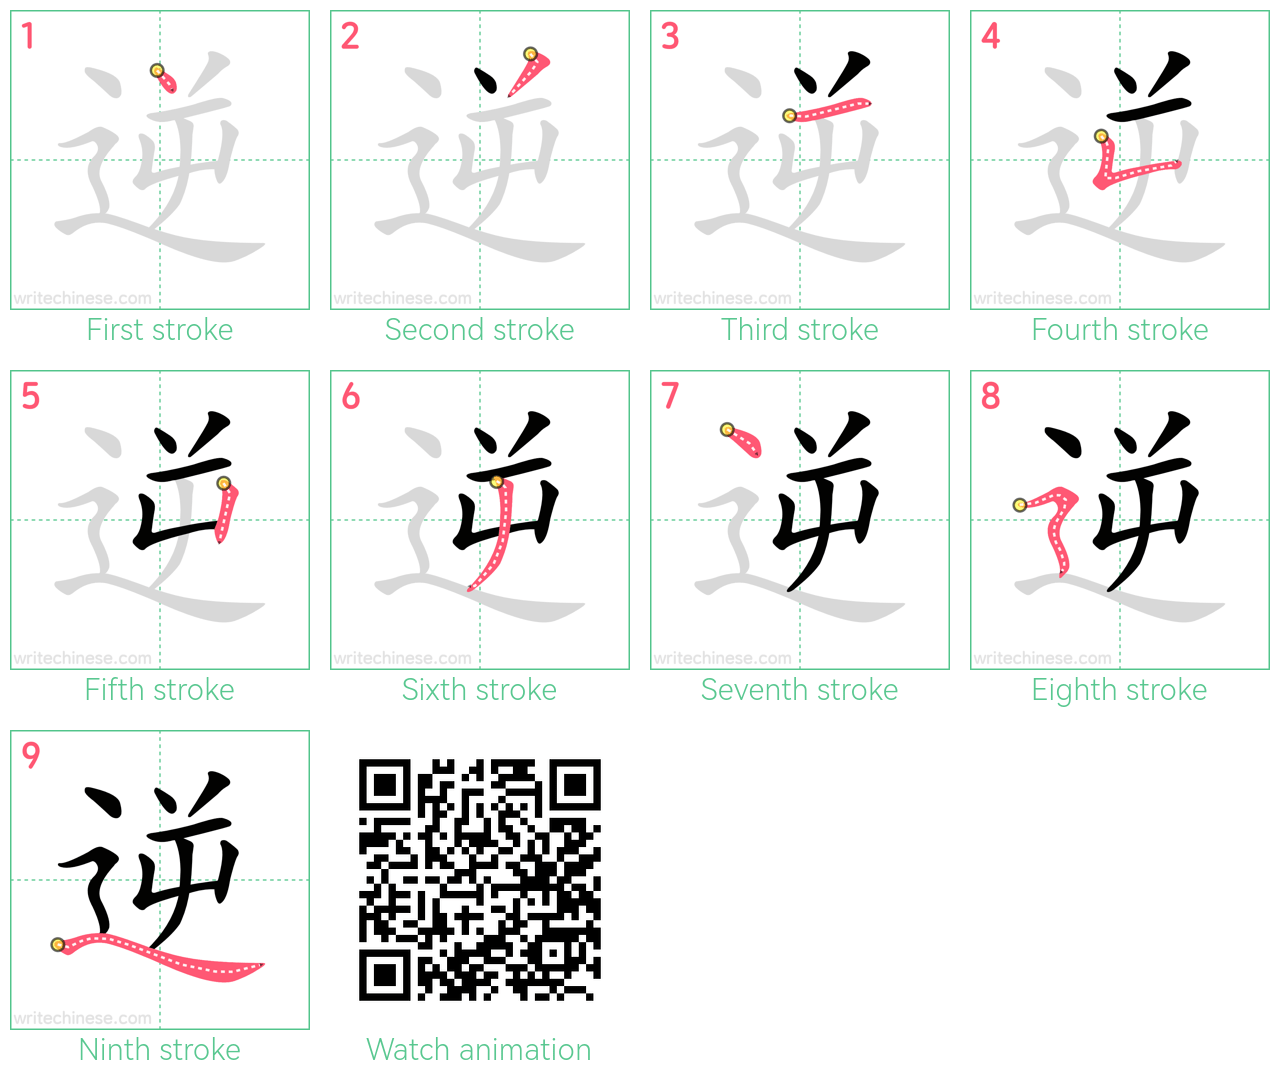 逆 step-by-step stroke order diagrams